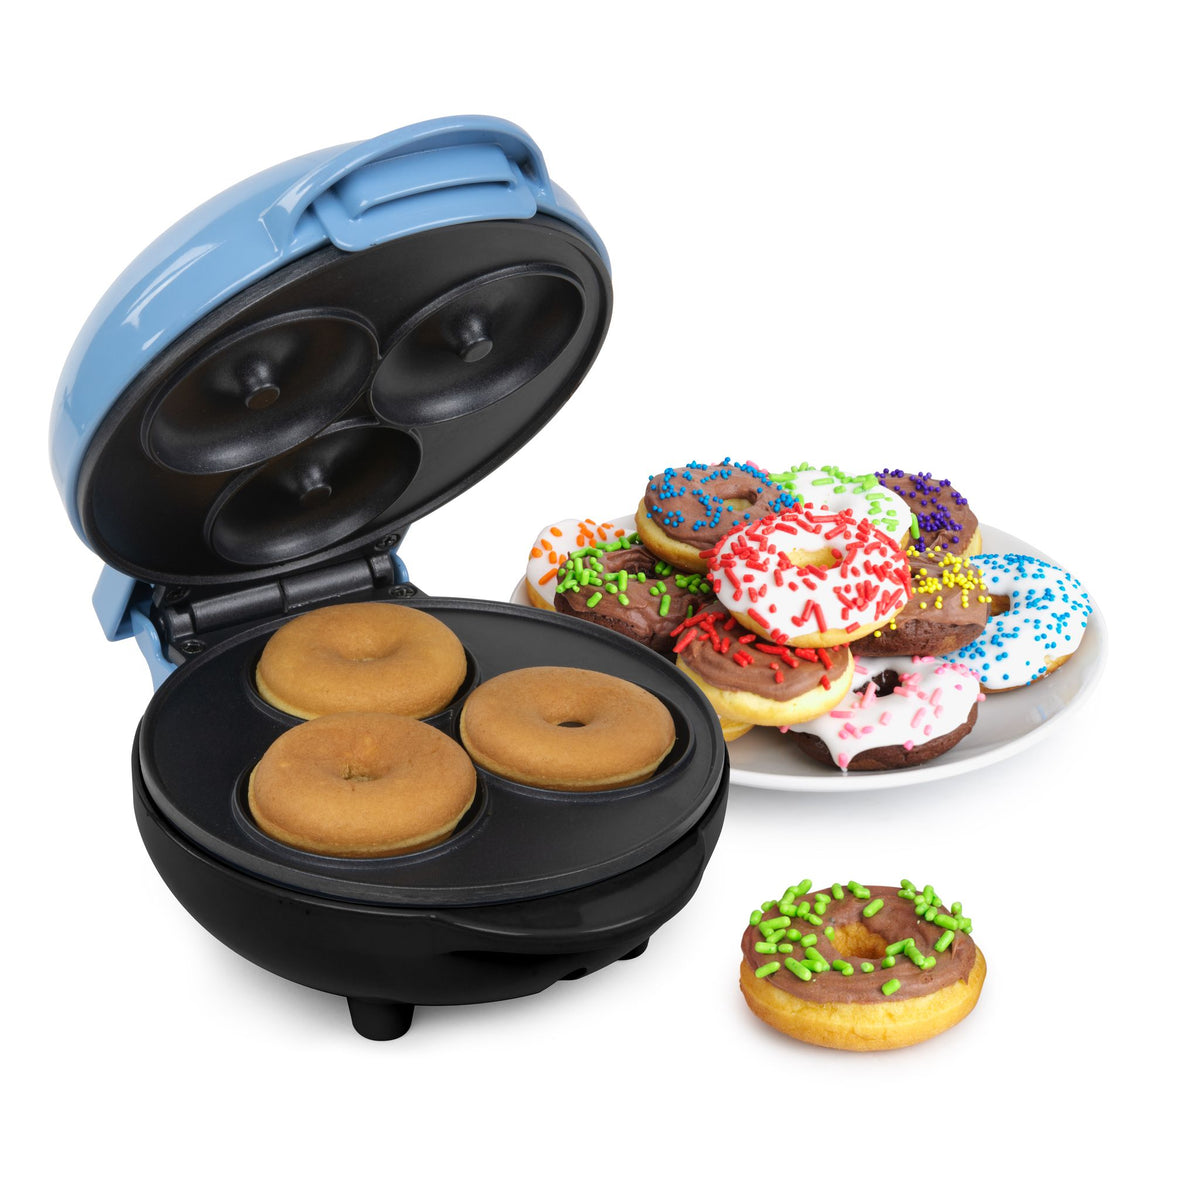  Mini Donuts, Small Donut Maker, Electric Mini Donut